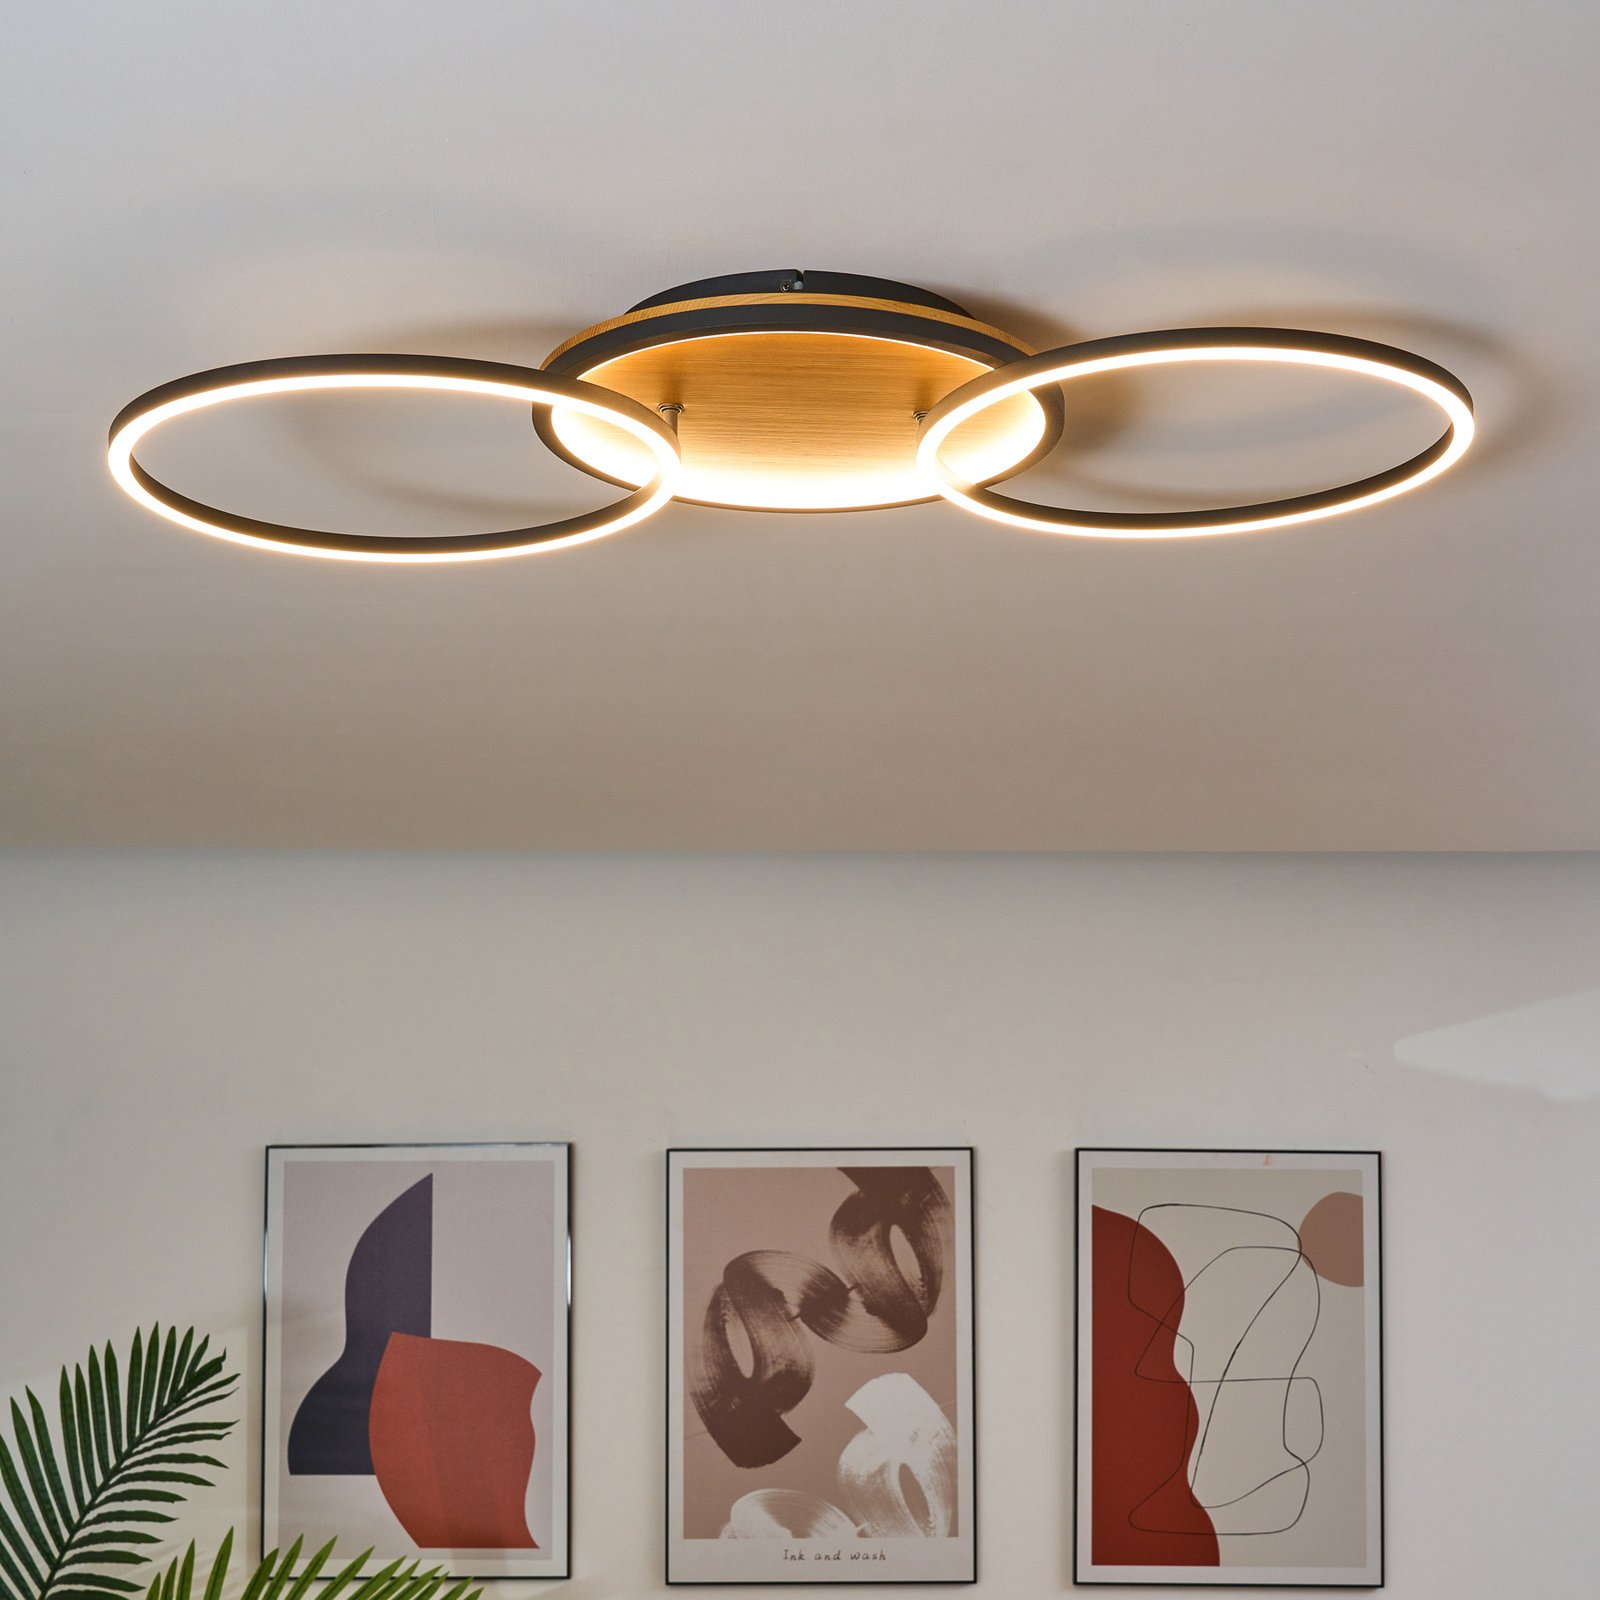 Kiru LED stropné svietidlo, borovica, dĺžka 87,4 cm, 2 svetlá, drevo